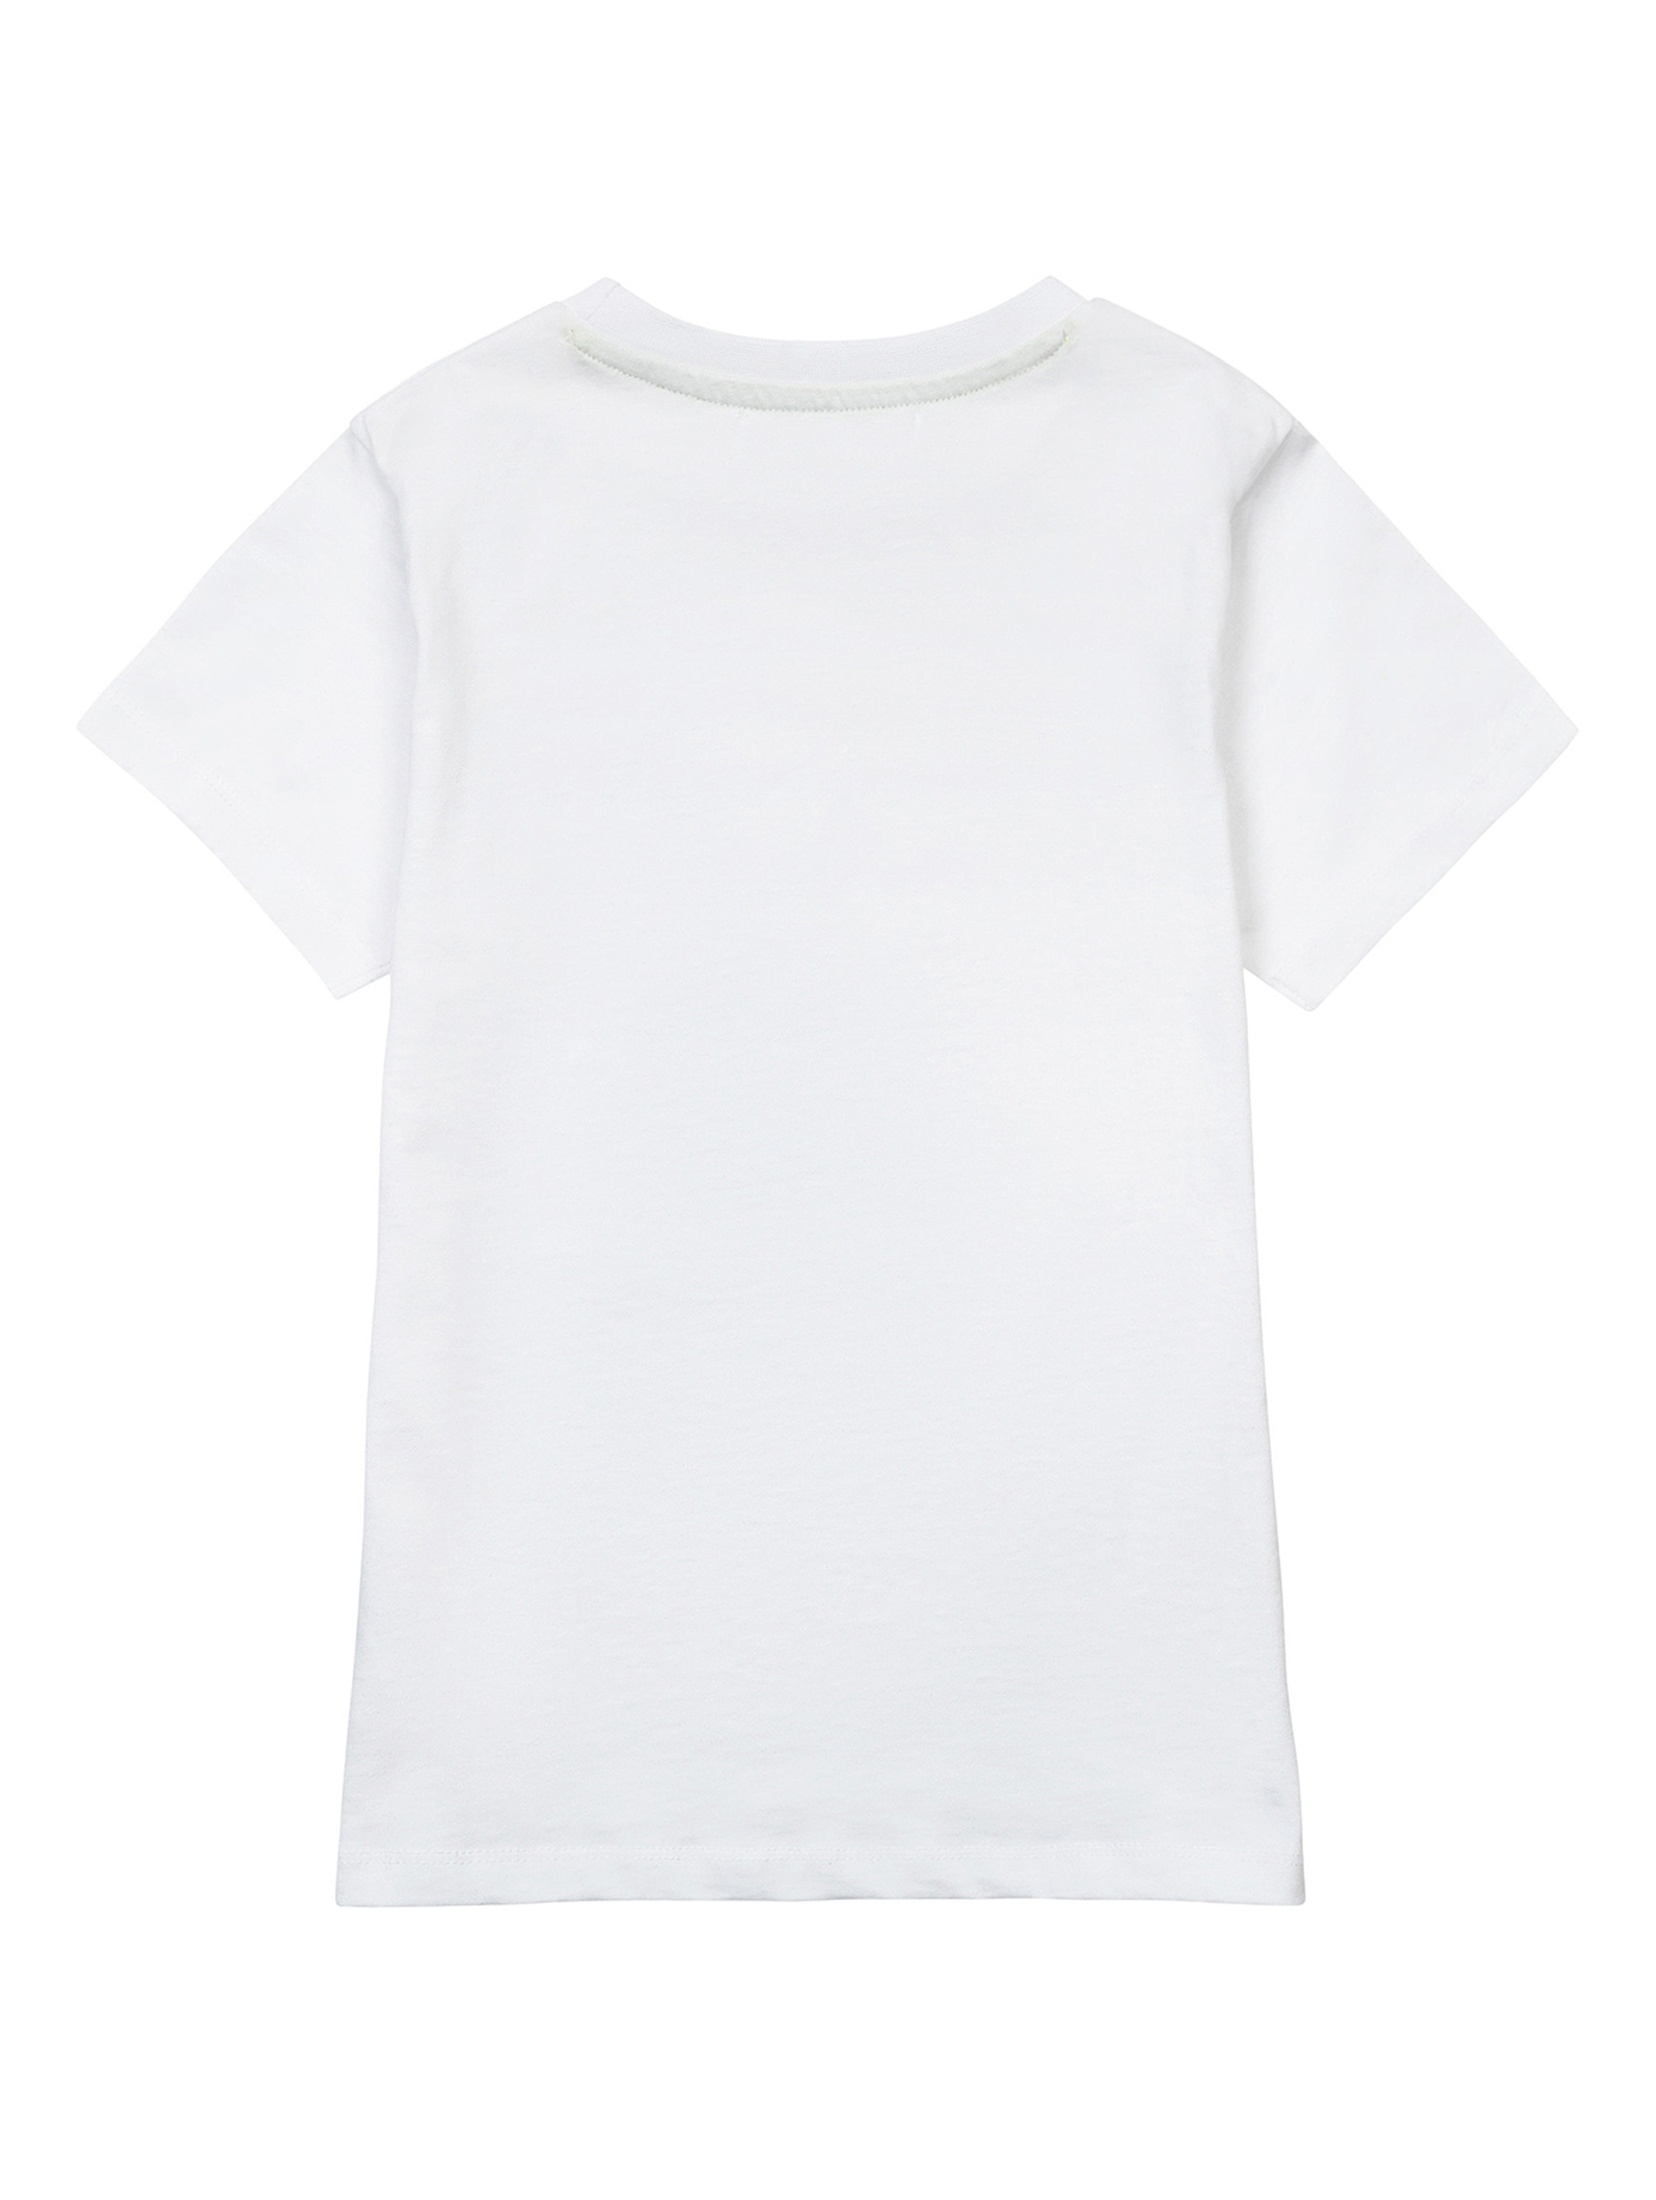 Bawełniany biały t-shirt dla chłopca z nadrukiem pandy